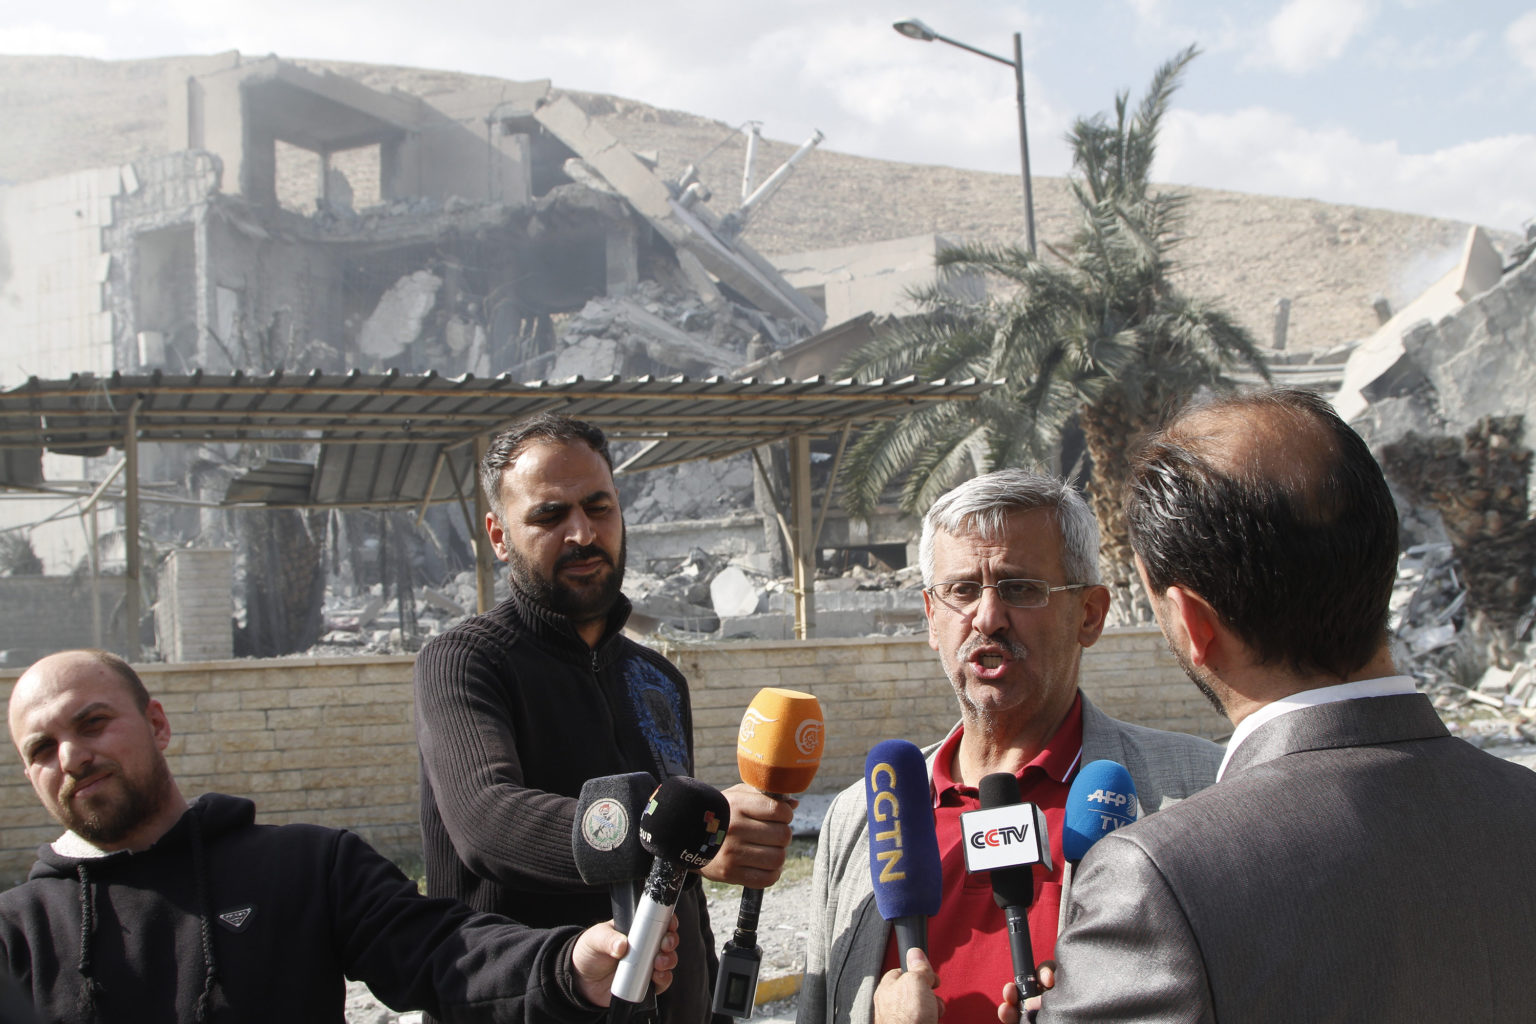 Ντούμα: Οι επιθεωρητές του OPCW συνέλεξαν δείγματα για ανάλυση